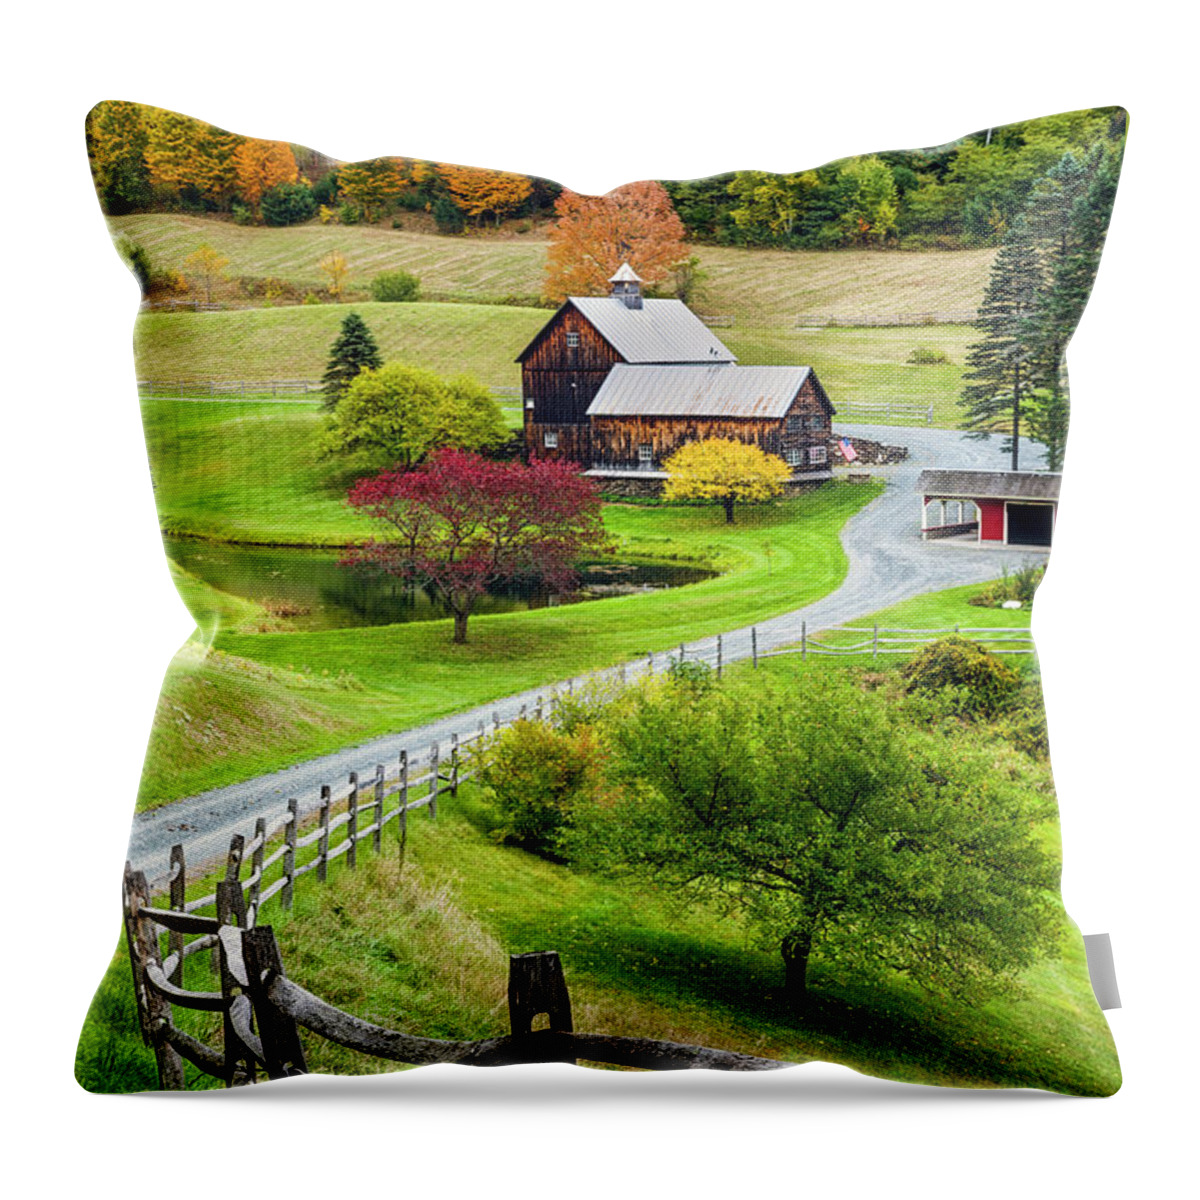 Jenne Farm Throw Pillow featuring the photograph Sleepy Hollow Farm in Autumn by Randy Lemoine